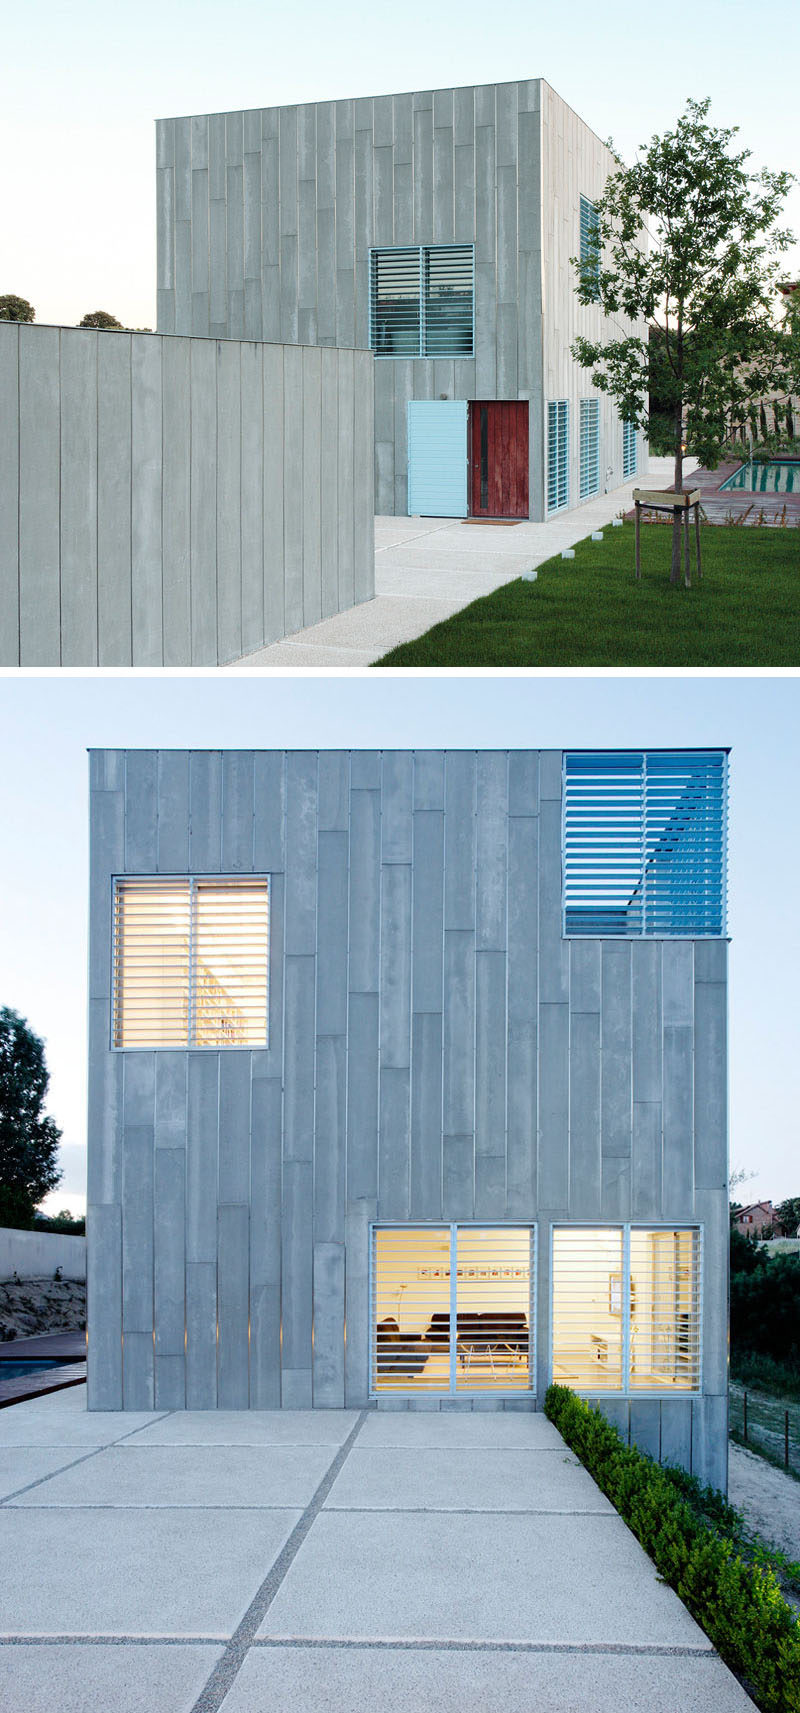  12 Минималистский современный экстерьер дома // Серый сайдинг покрывает этот внешний вид дома с голубыми ставнями, которые используют игривый, но минималистичный вид 